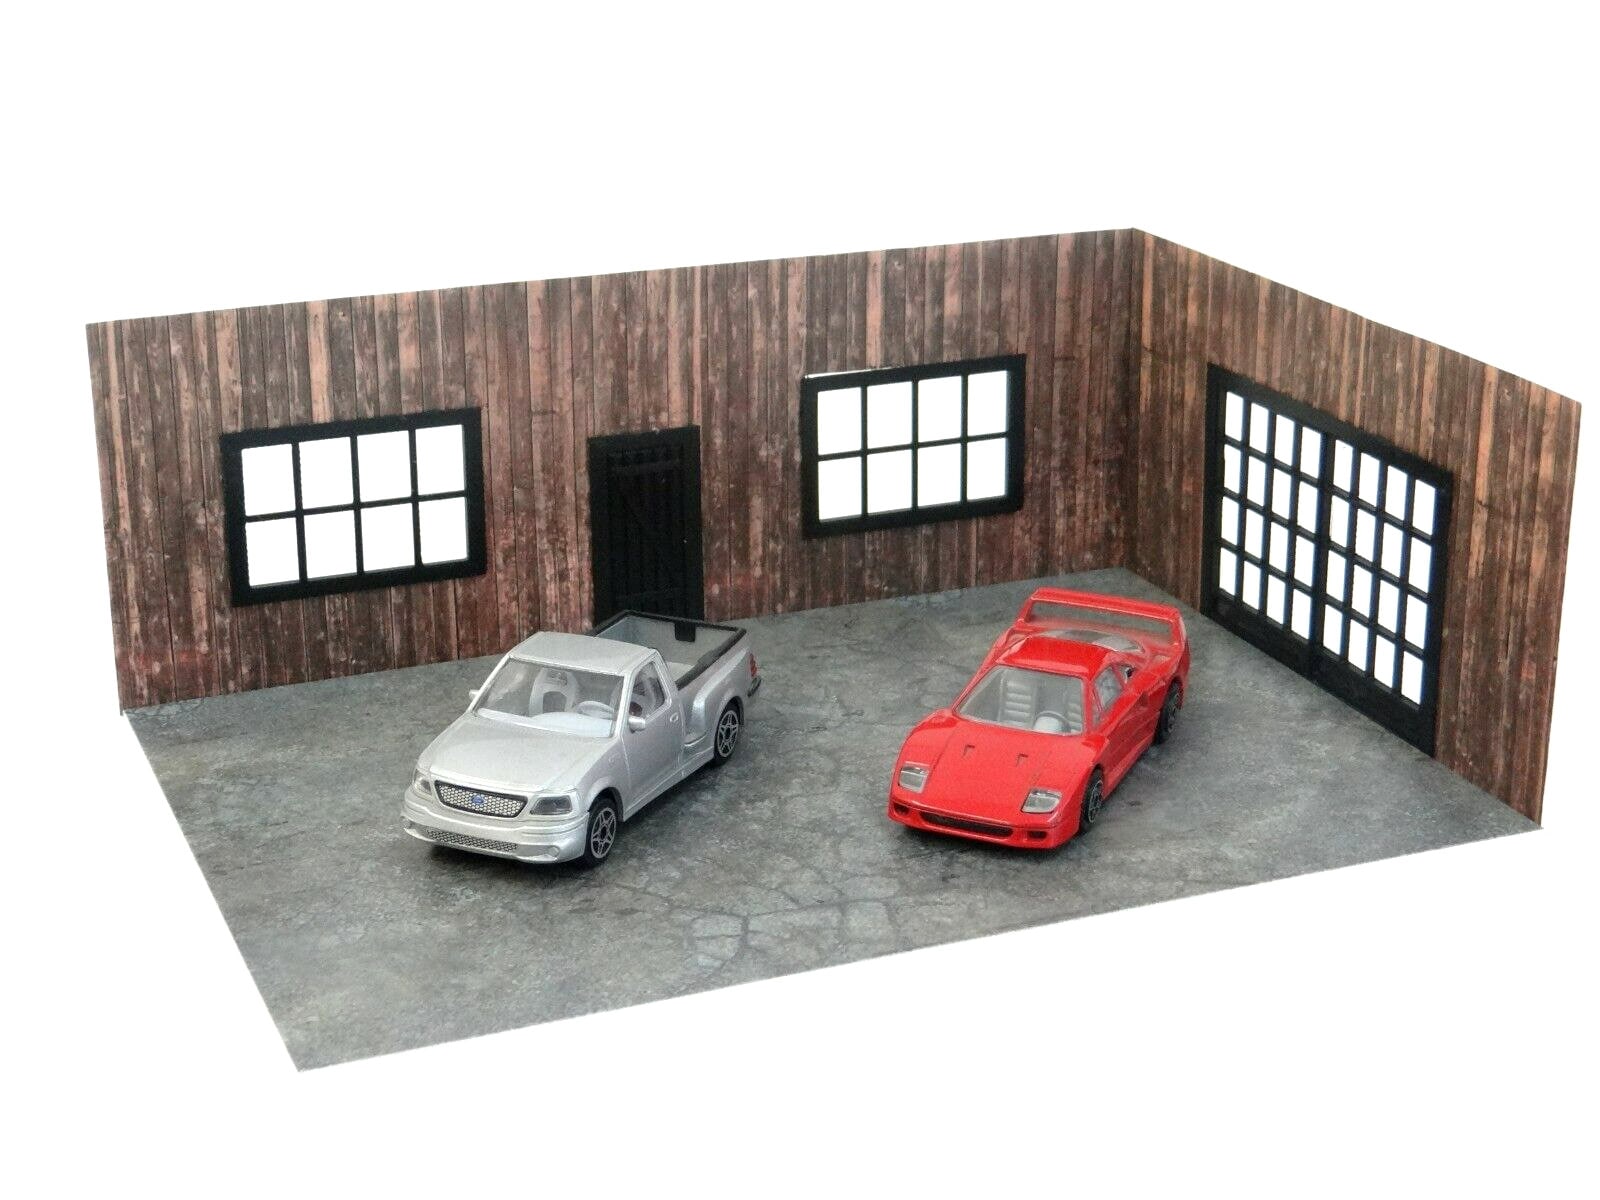 Diorama : Garage Again  Toy garage, Garage design, Garage